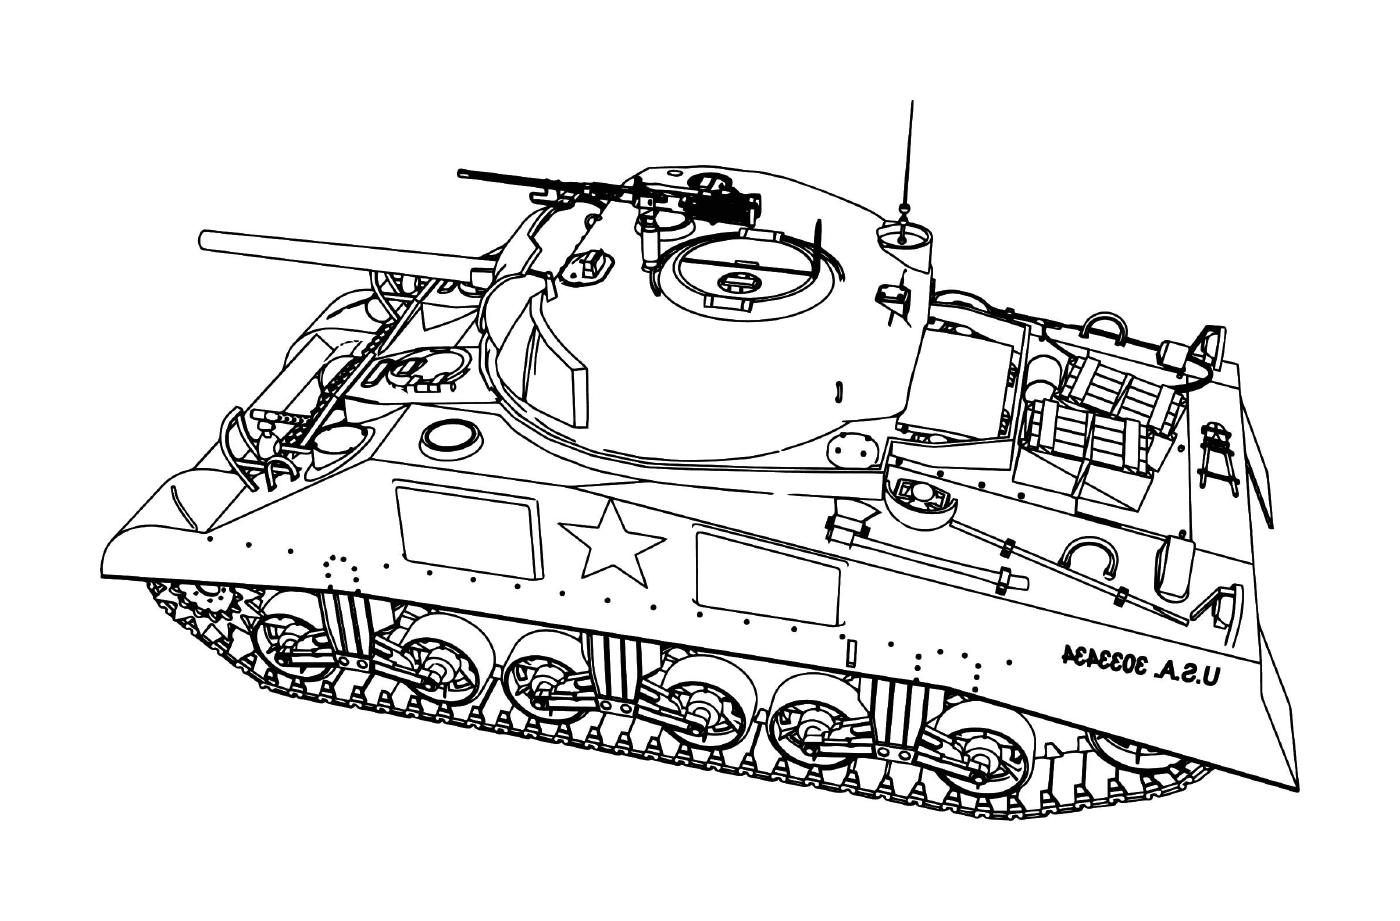  Tank Char Dassault dell'esercito americano (USA): un carro armato con una stella 